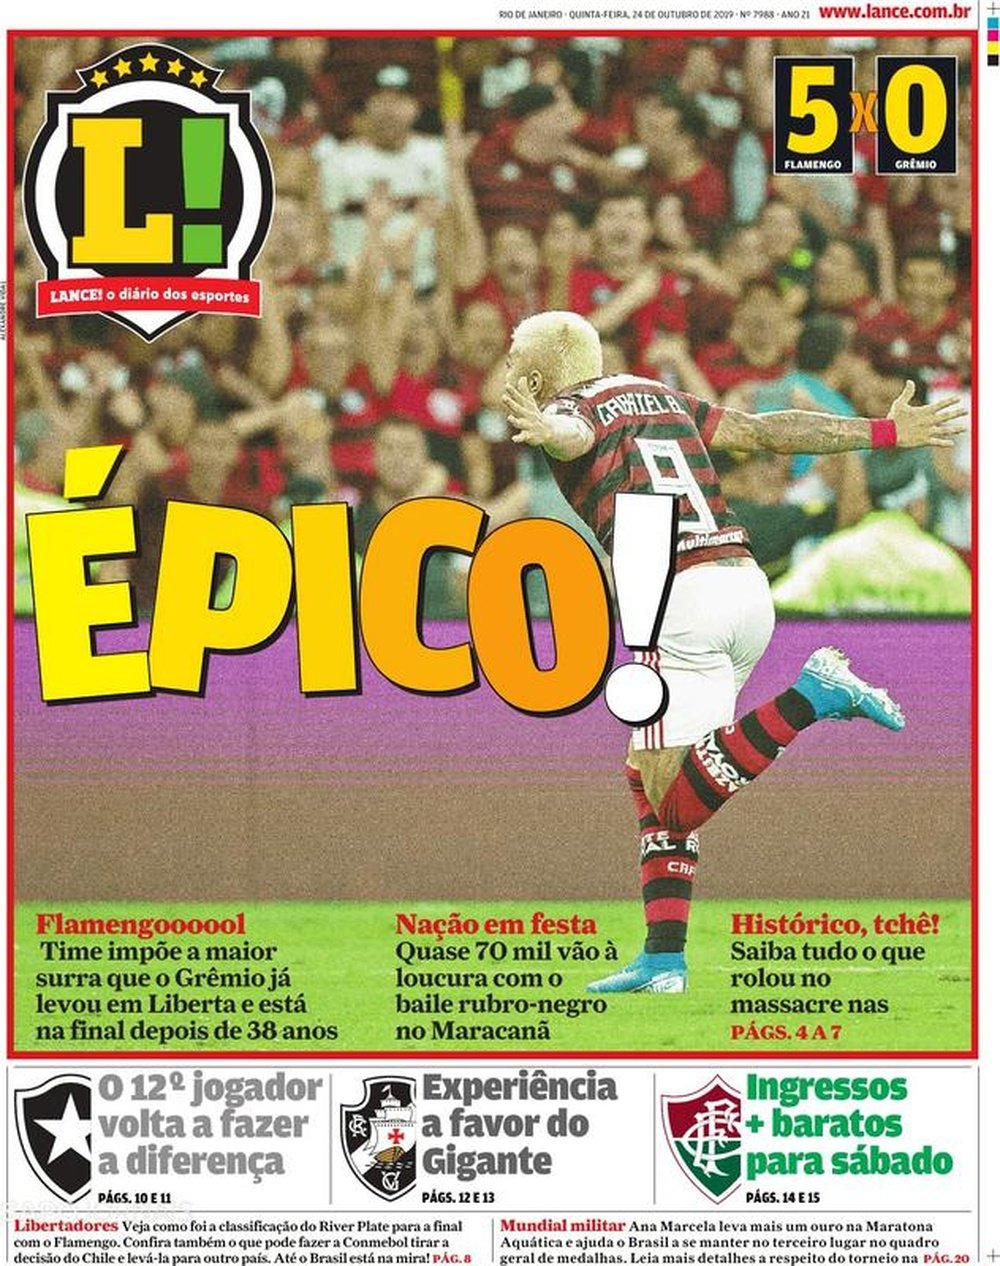 Capa do jornal 'Lance - Rio de Janeiro' de 24/10/19. Lance - Rio de Janeiro